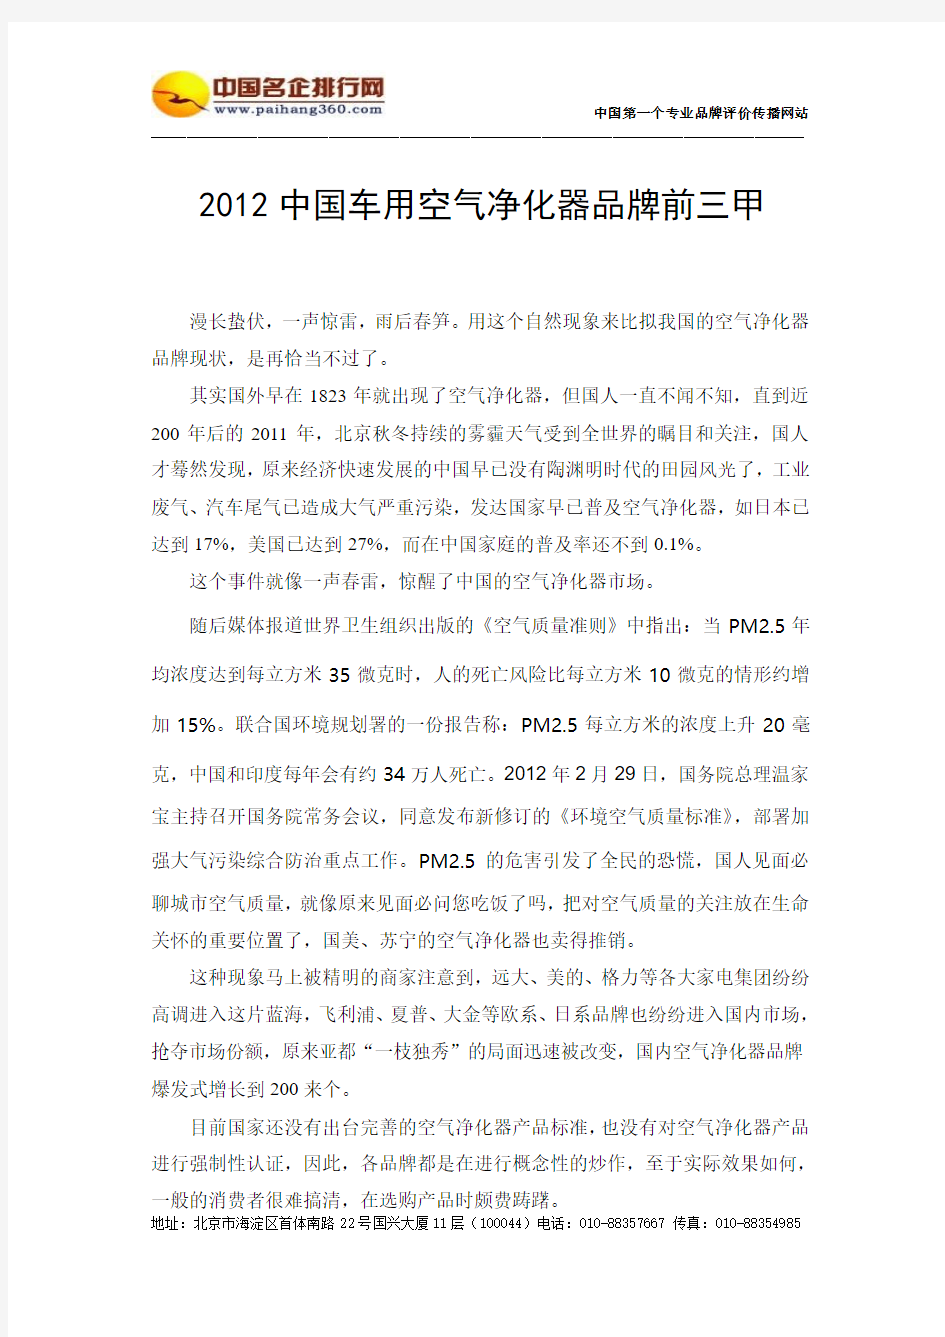 2012中国车用空气净化器三甲品牌